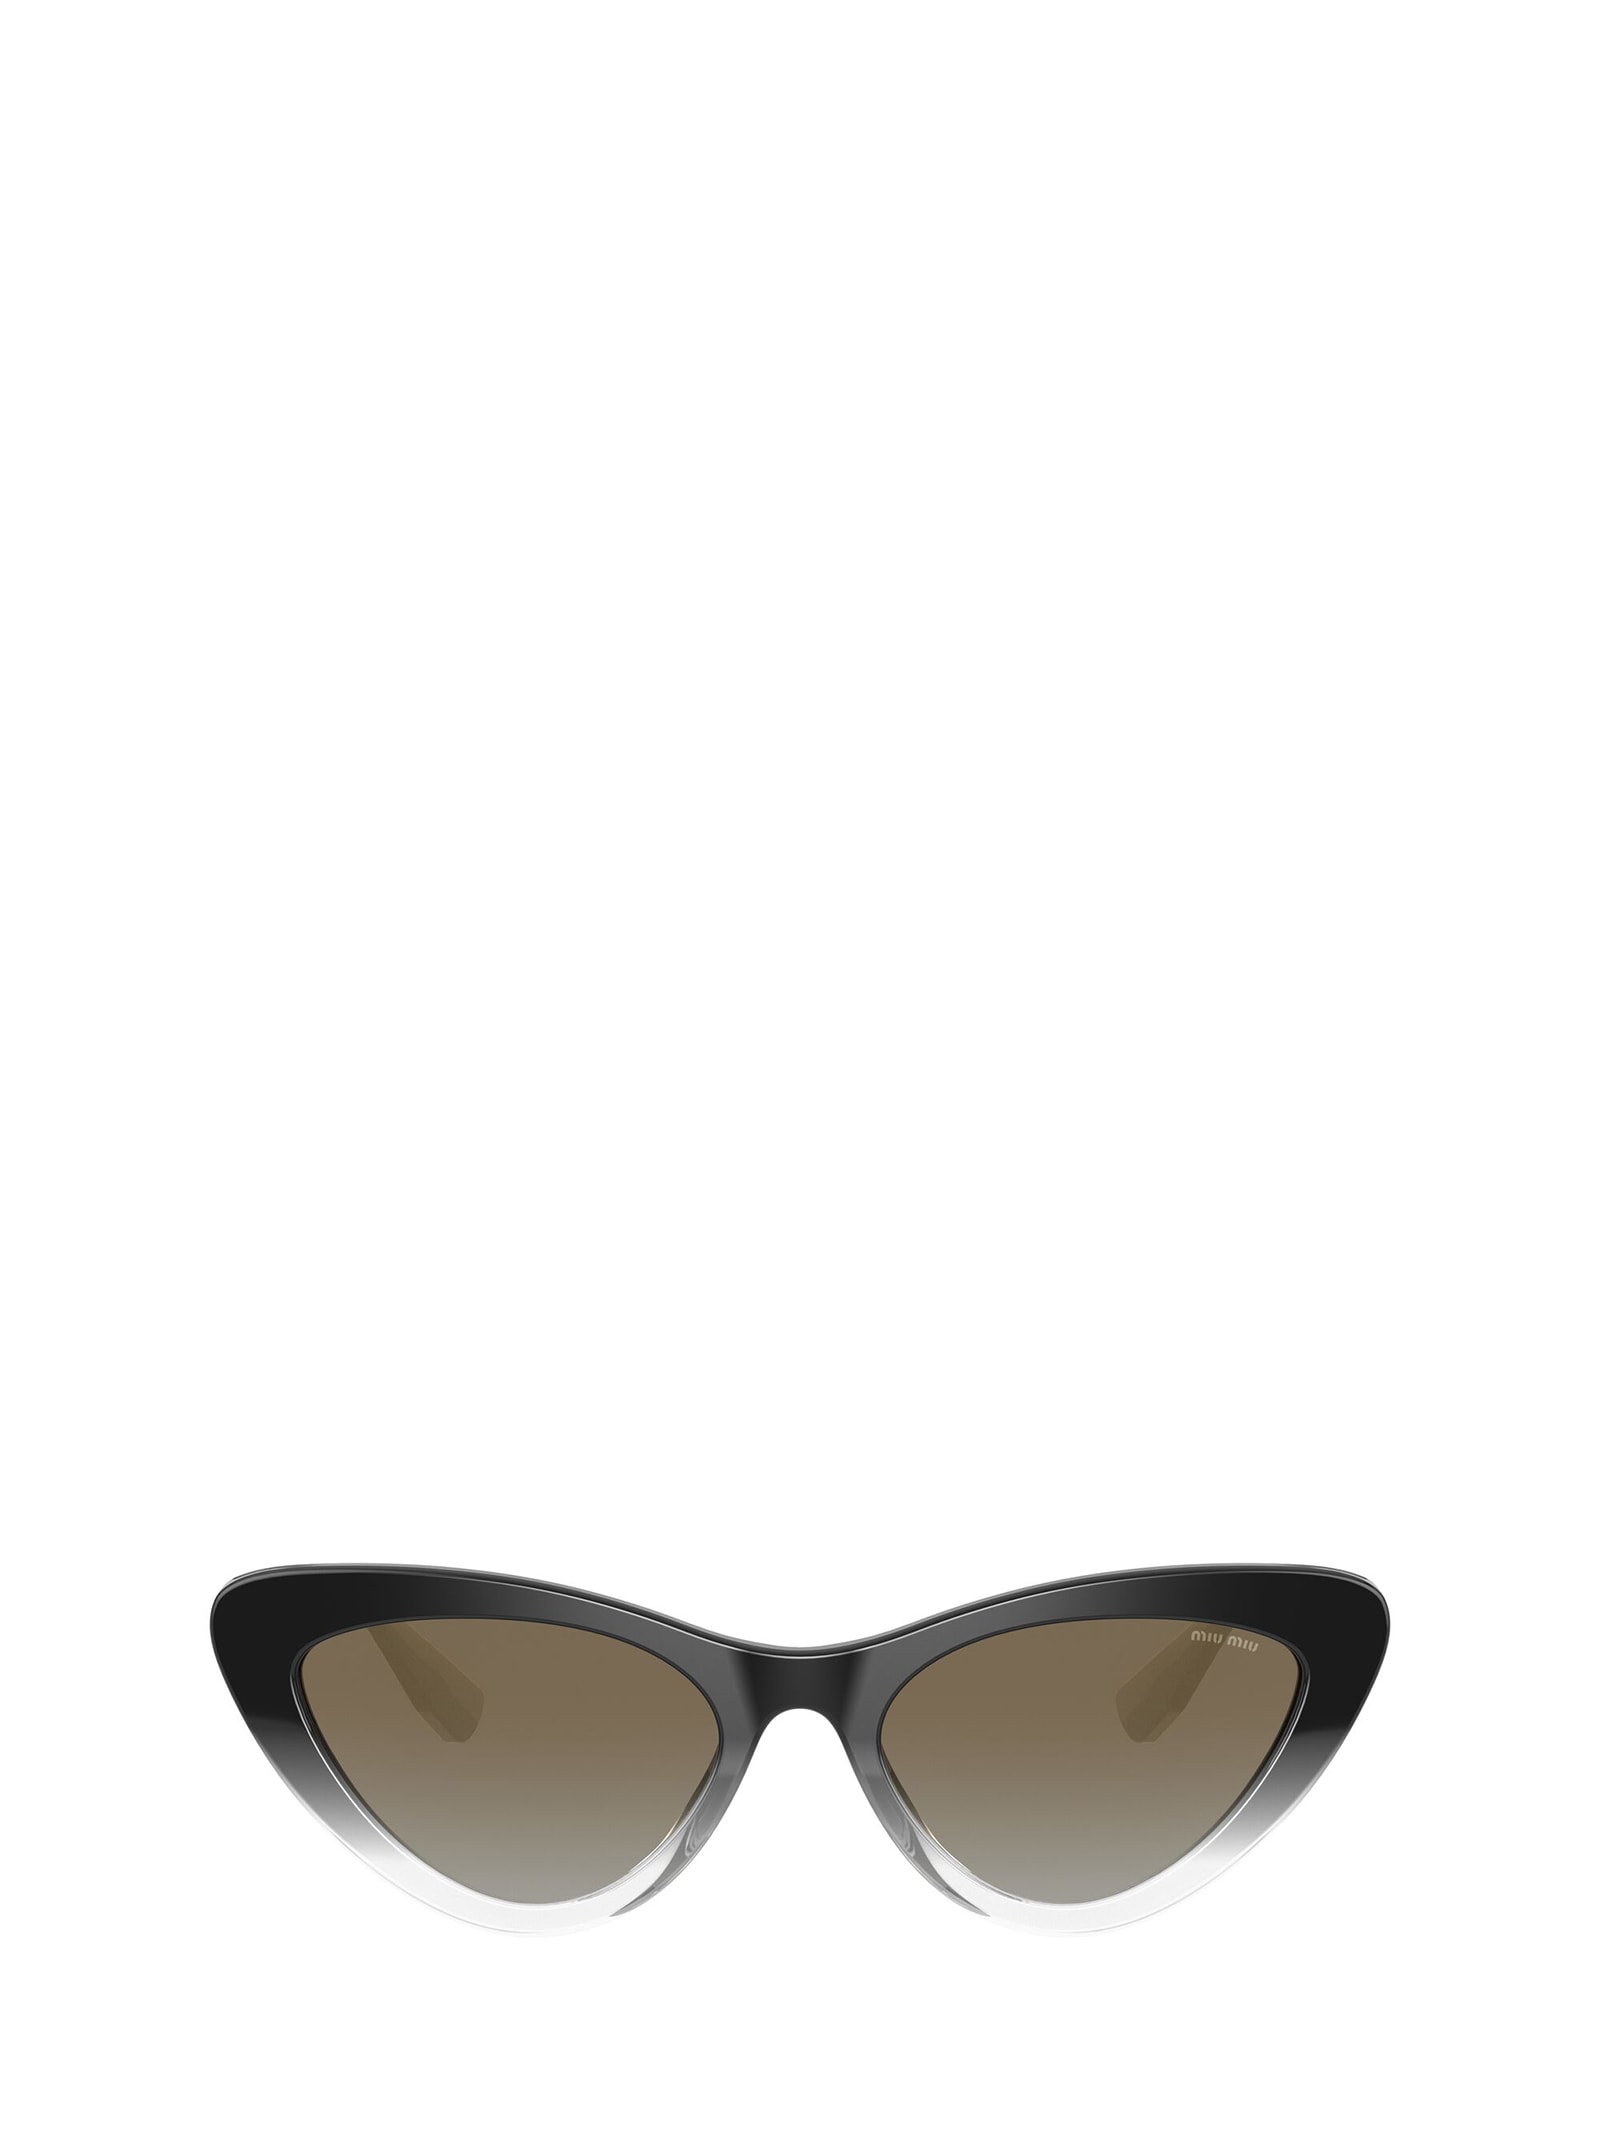 Miu Miu Eyewear Miu Miu Mu 01vs Black Gradient Sunglasses